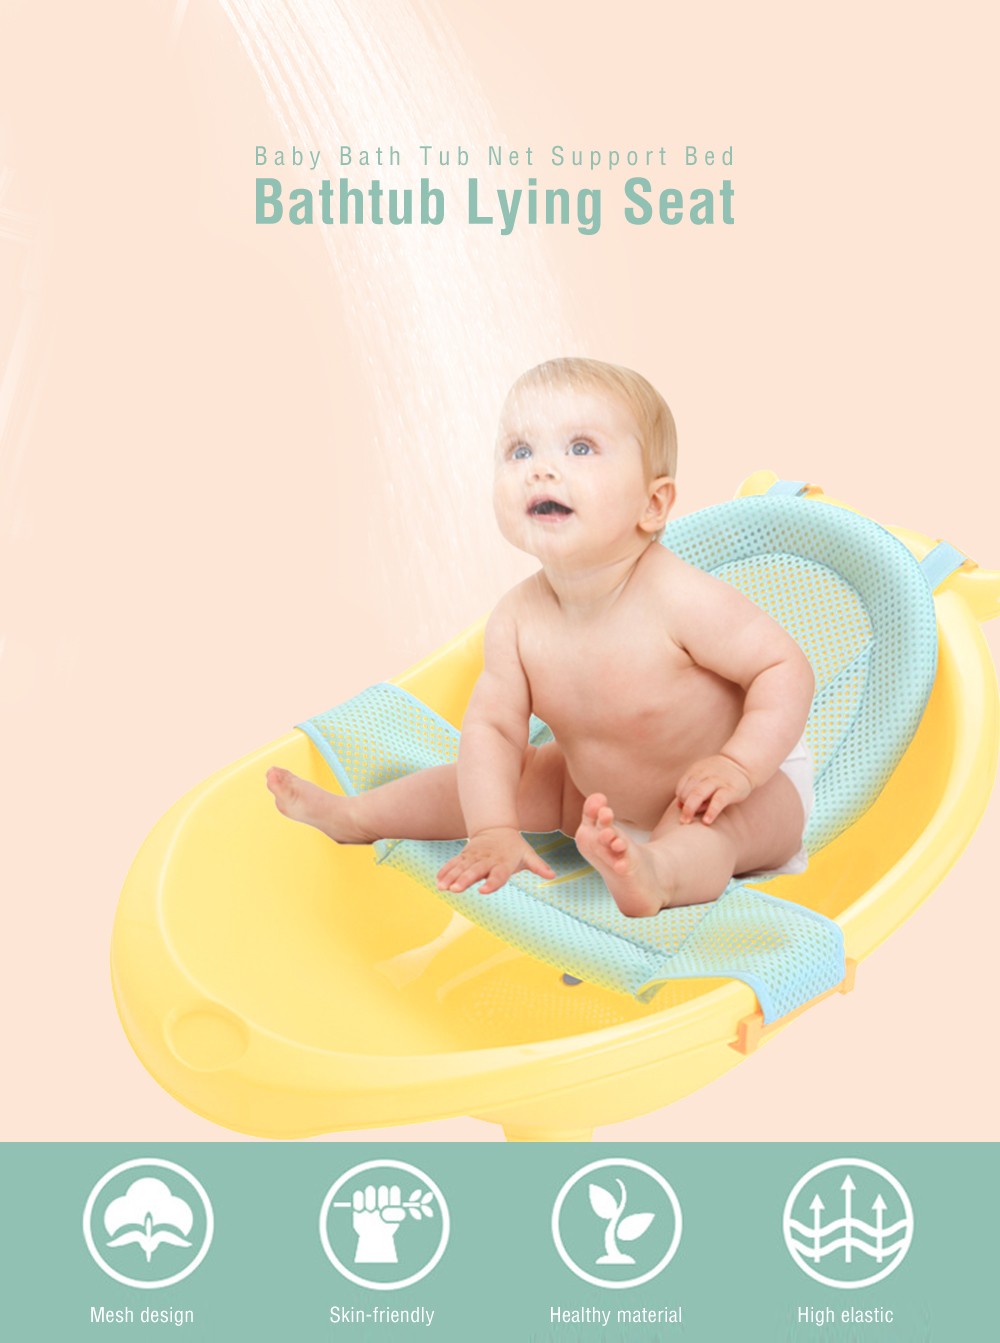 Baby Bath Tub Net Support Bed T-shaped Bathtub Lying Seat